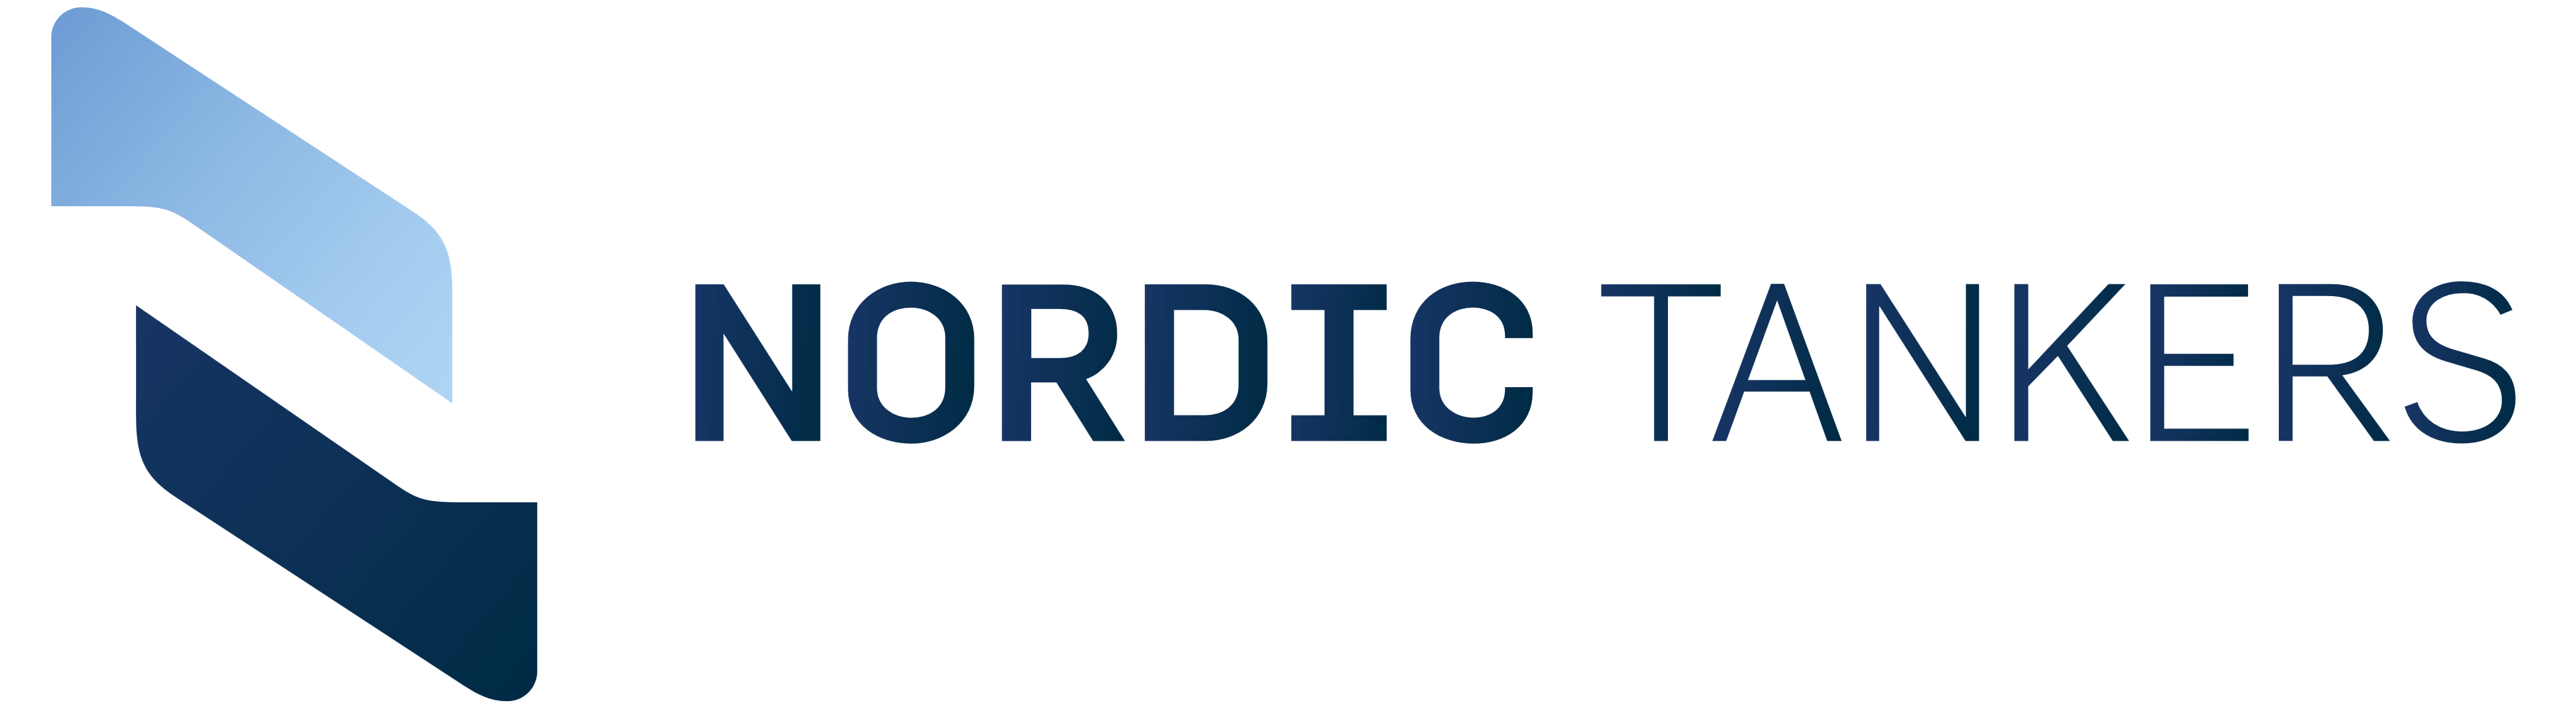 Nordic Tankers logo, logotype